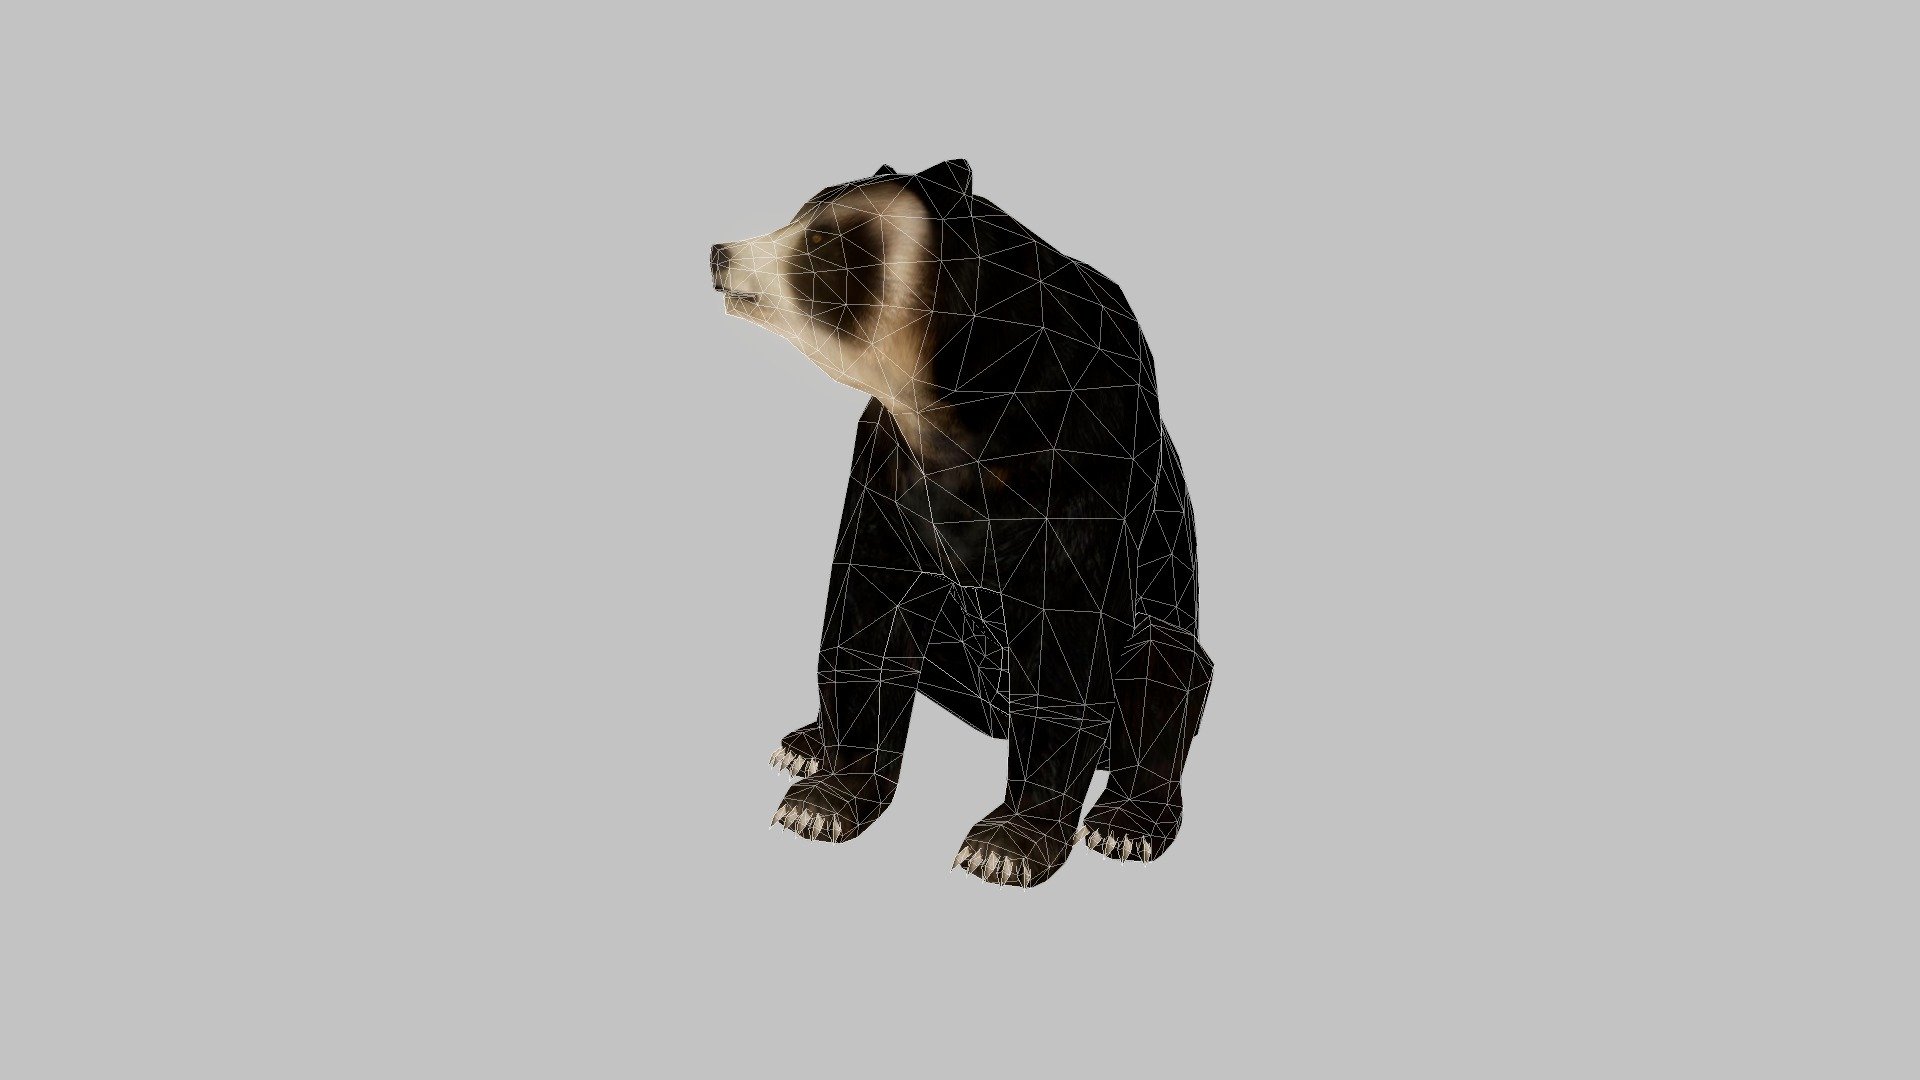 Proyecto modelado y animacion para aplicacion de realidad aumentada - Oso de anteojos (Spectacled bear) - Download Free 3D model by hedagora 3d model